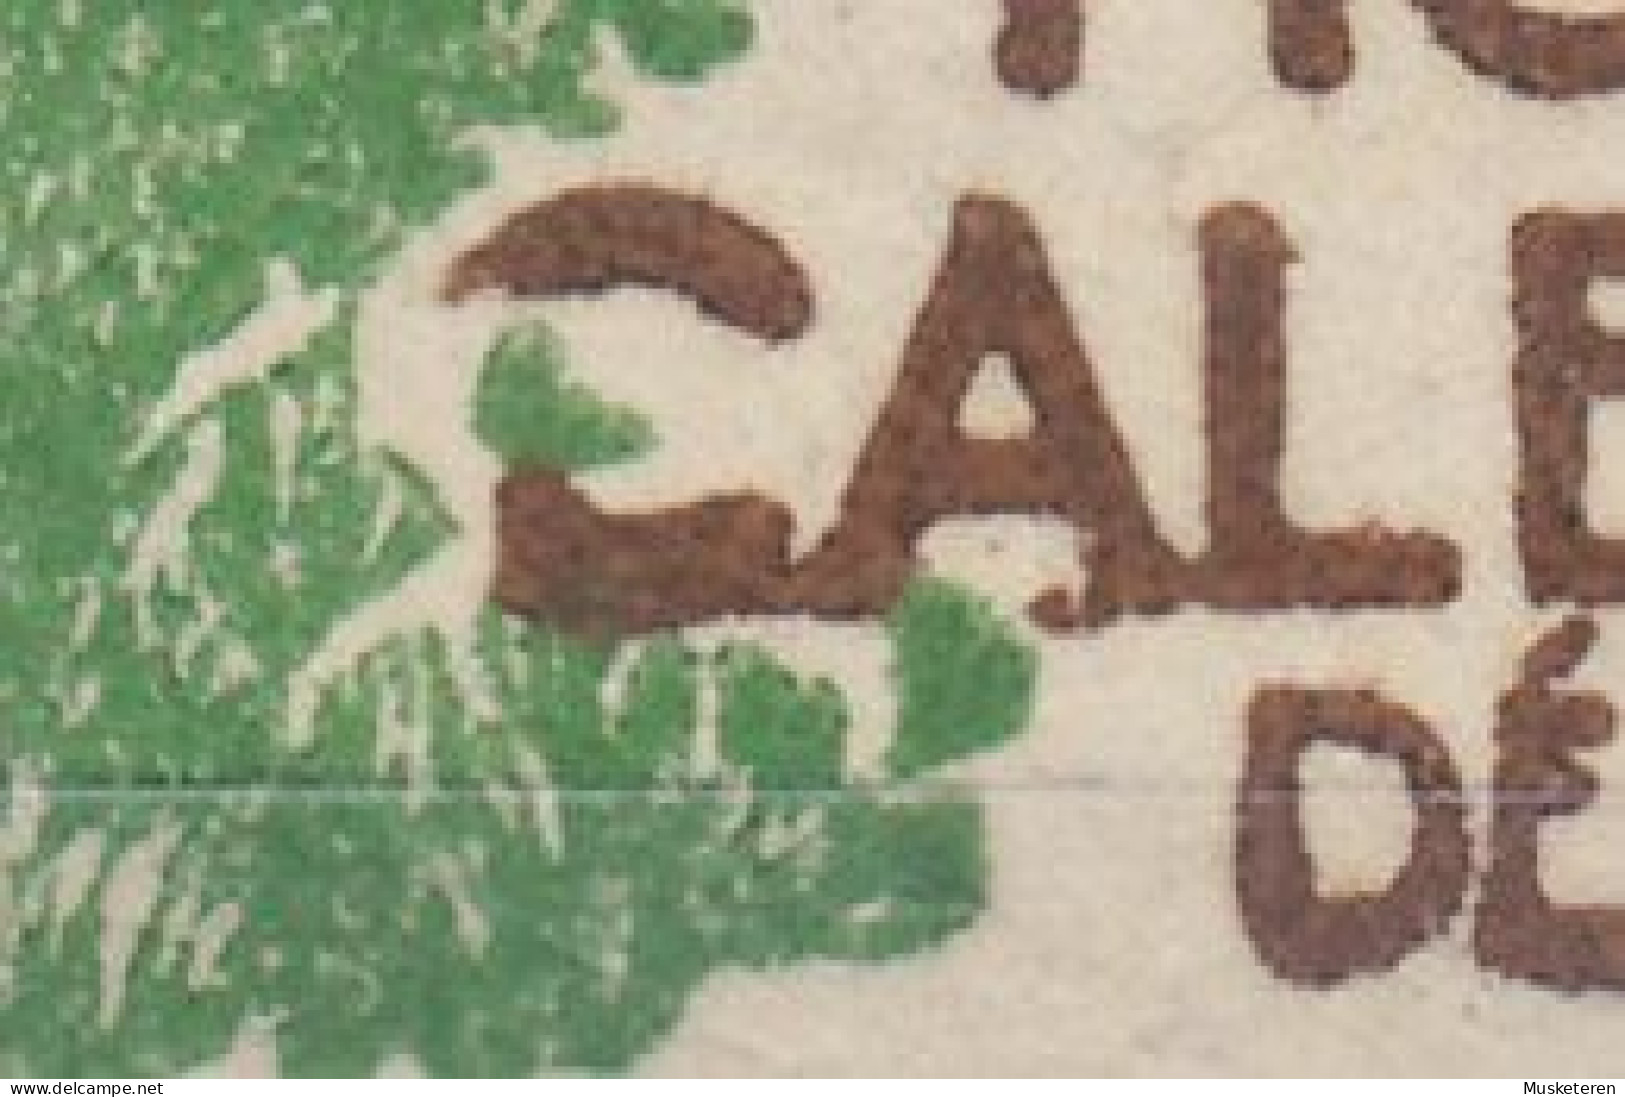 New Caledonia Nouvelle Caledonie 1928 Mi. 137, 2c. Bucht An Der Pointe Des Palétuviers, ERROR Variety Broken 'C', MH* - Neufs